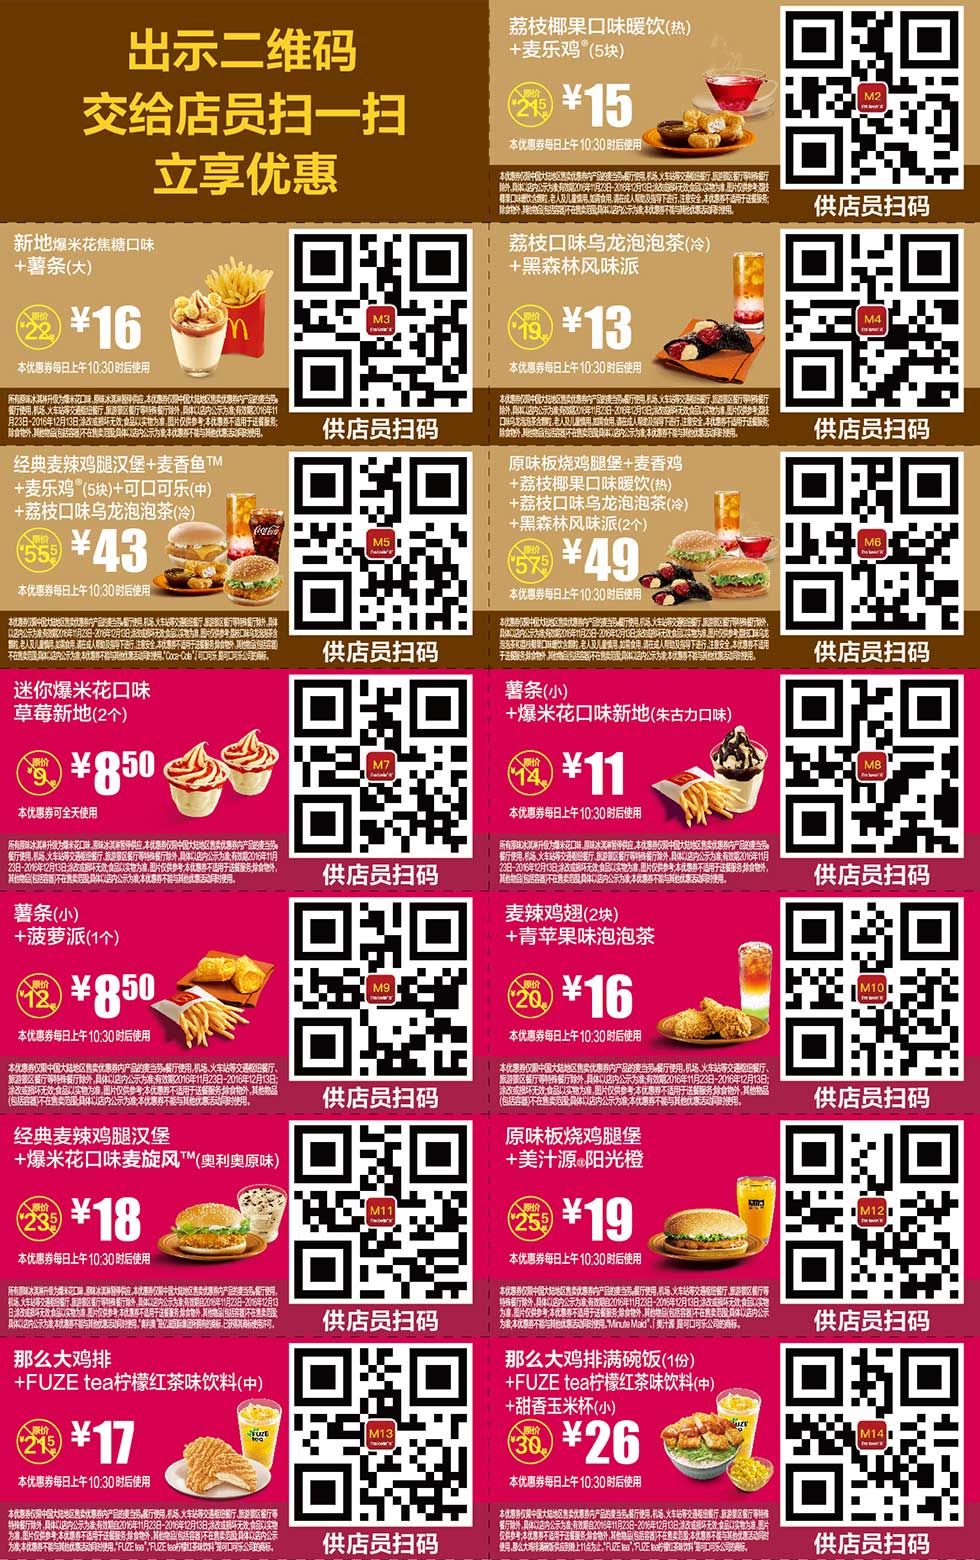 麦当劳优惠券2016年11月12月手机版整张版本，手机出示券码享受M记优惠 有效期至：2016年12月13日 www.5ikfc.com